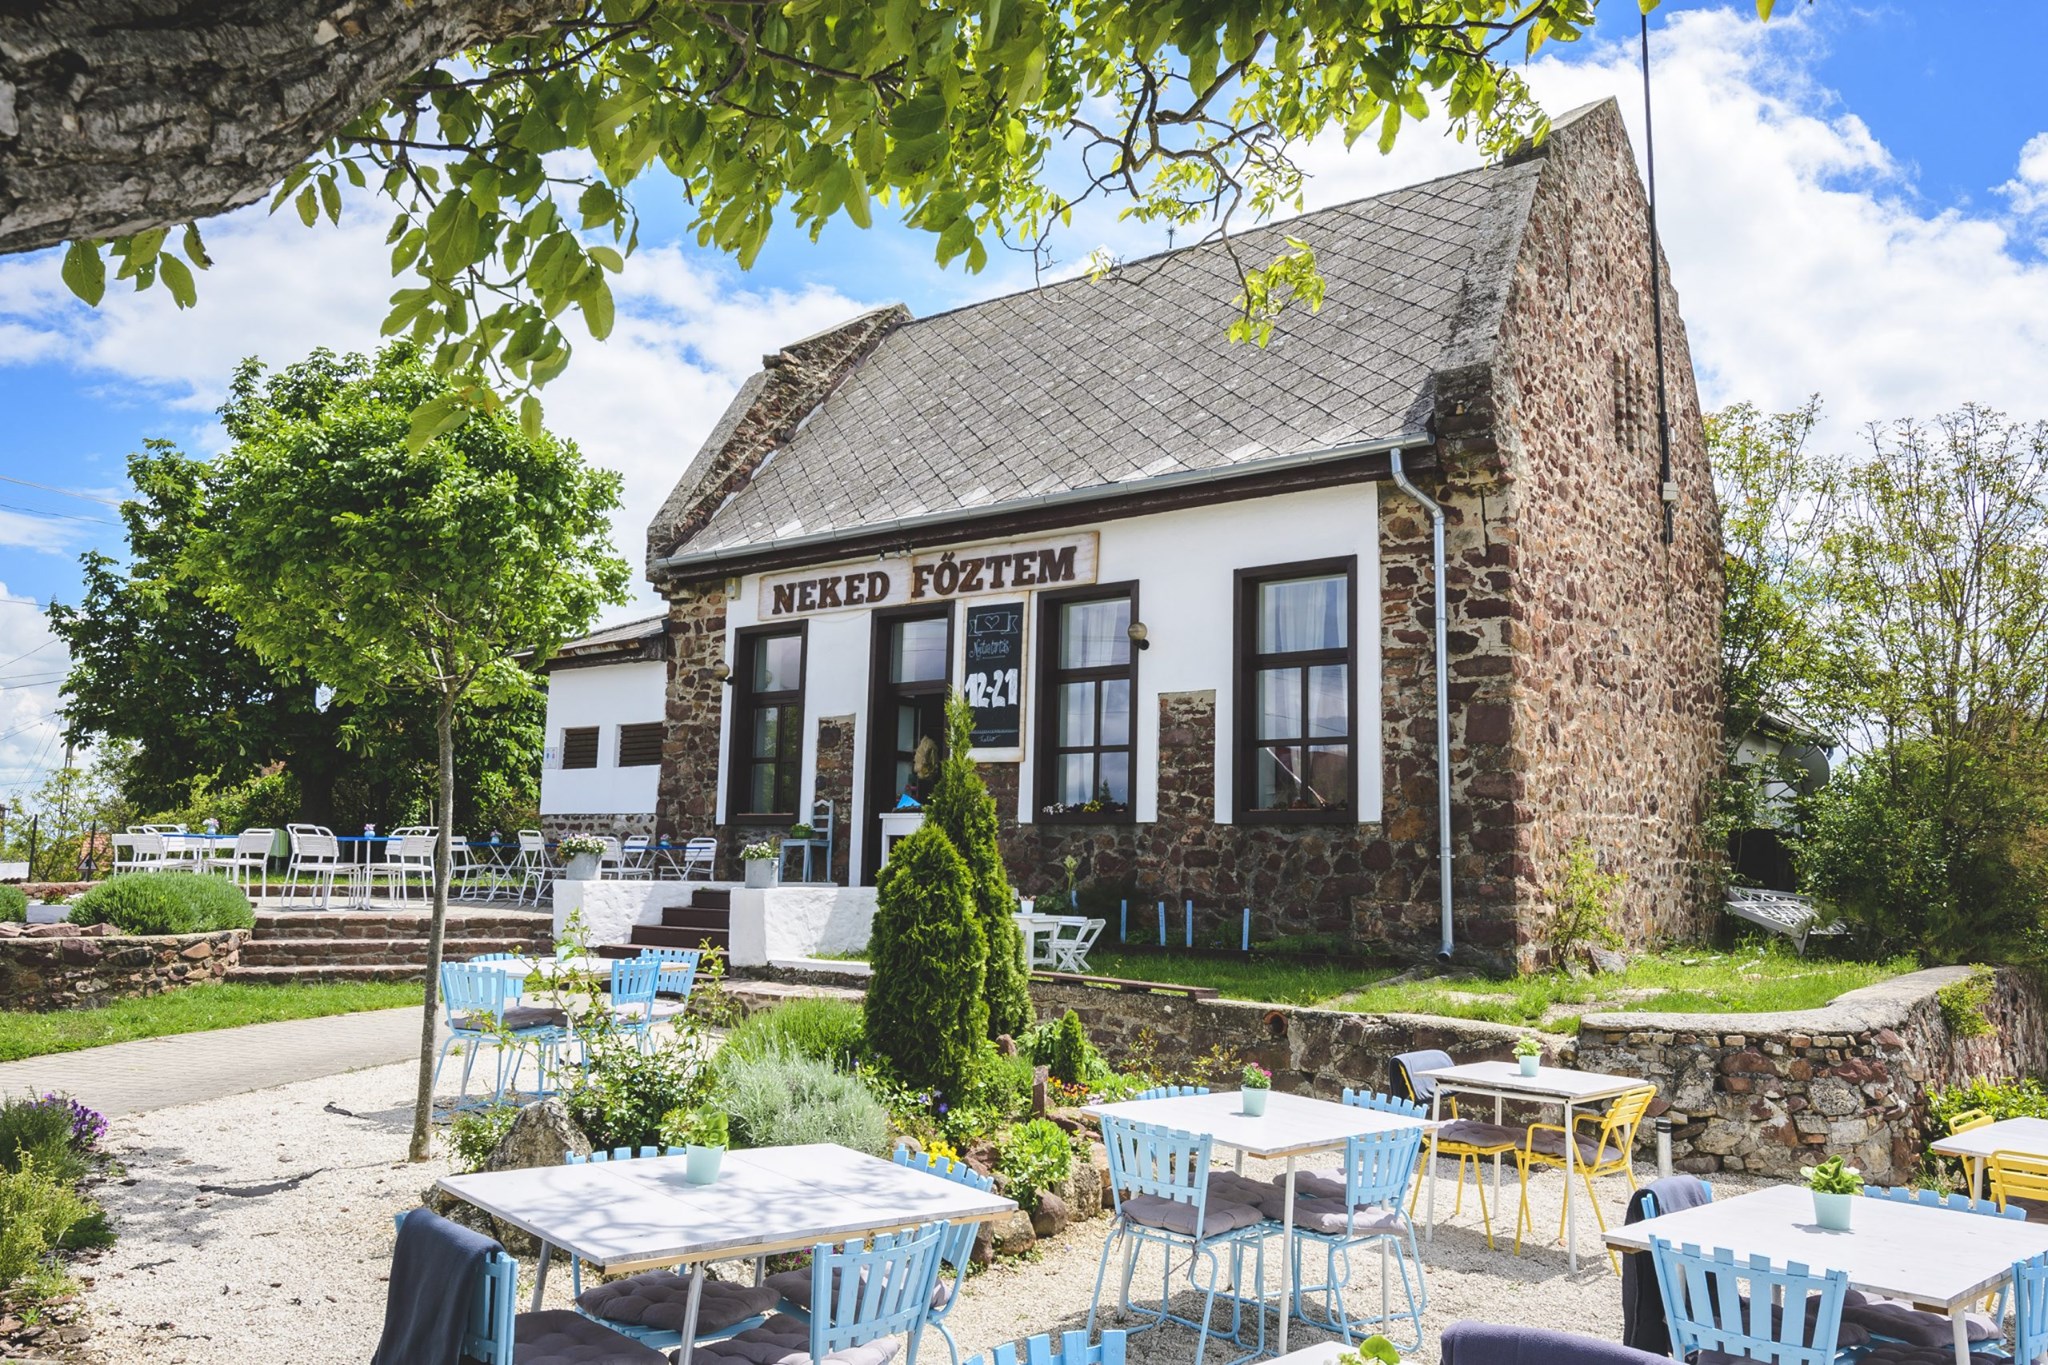 5 hangulatos teraszos étterem a Balaton-felvidéken, ami tárt kapukkal vár tavasszal